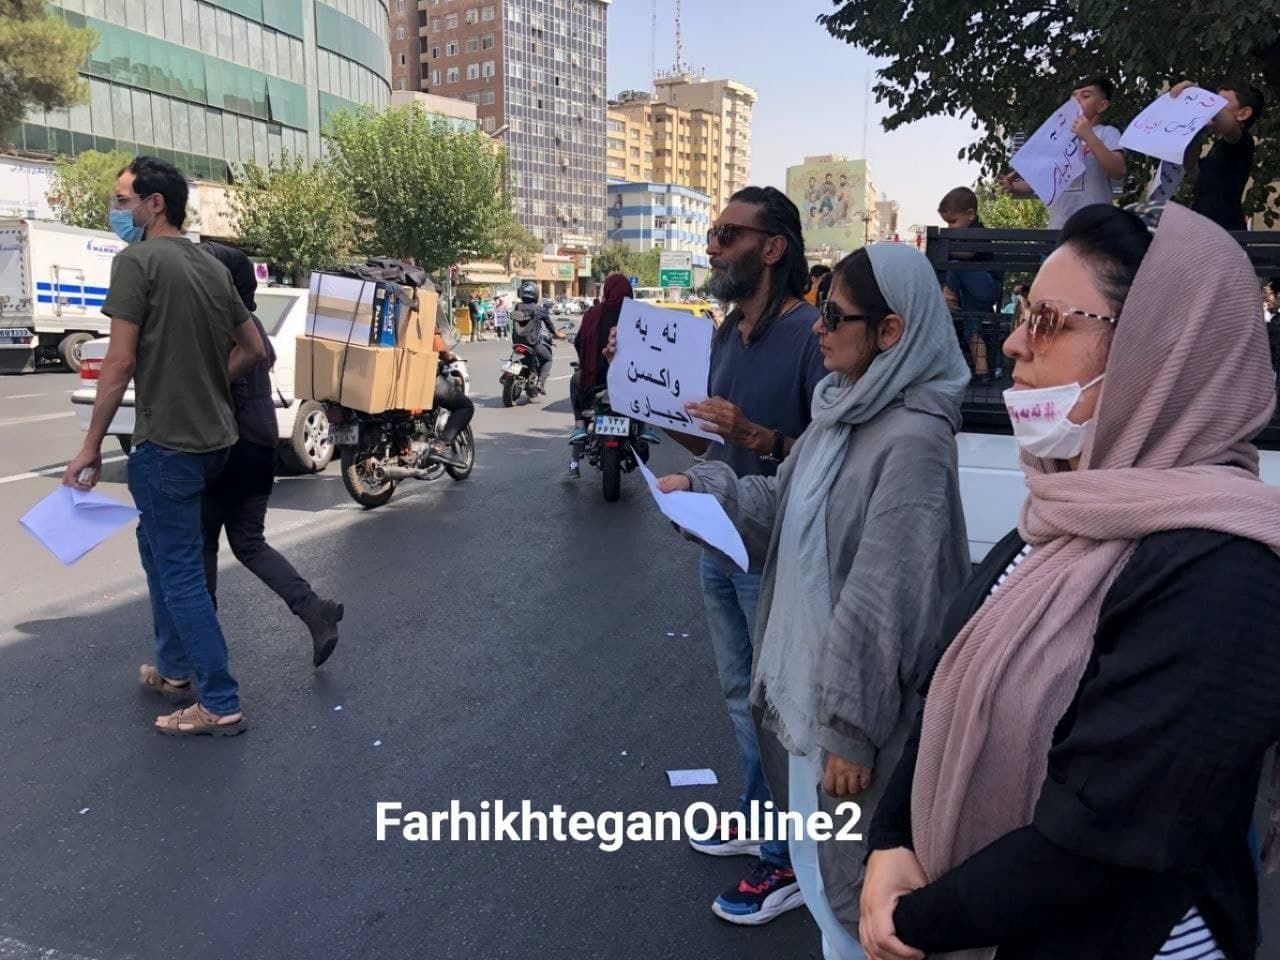 فیلم جنجالی از تجمع مخالفان واکسیناسیون کرونا در ایران